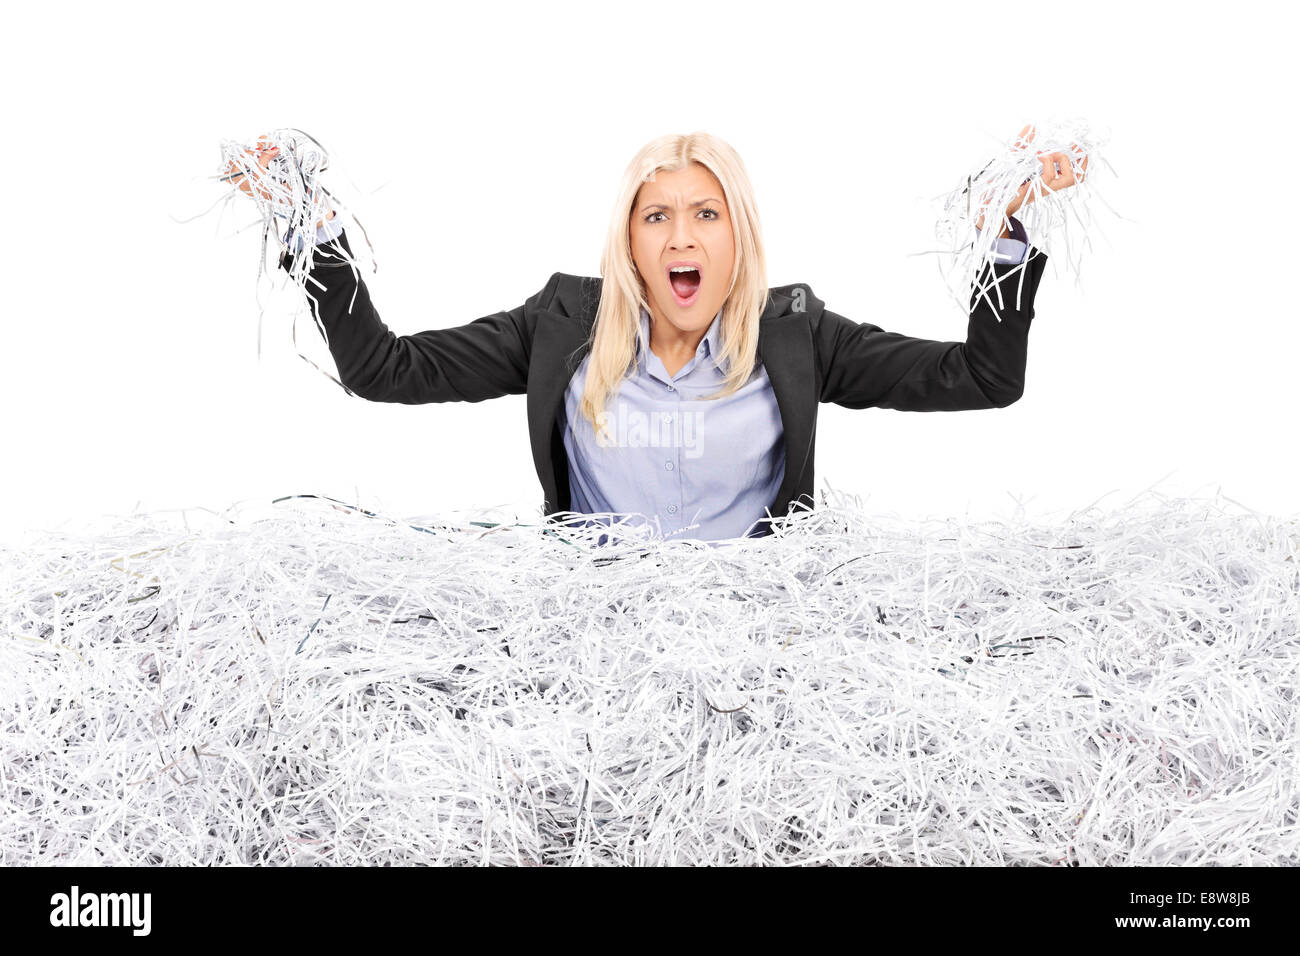 Angry businesswoman dans une pile de papier déchiqueté Banque D'Images